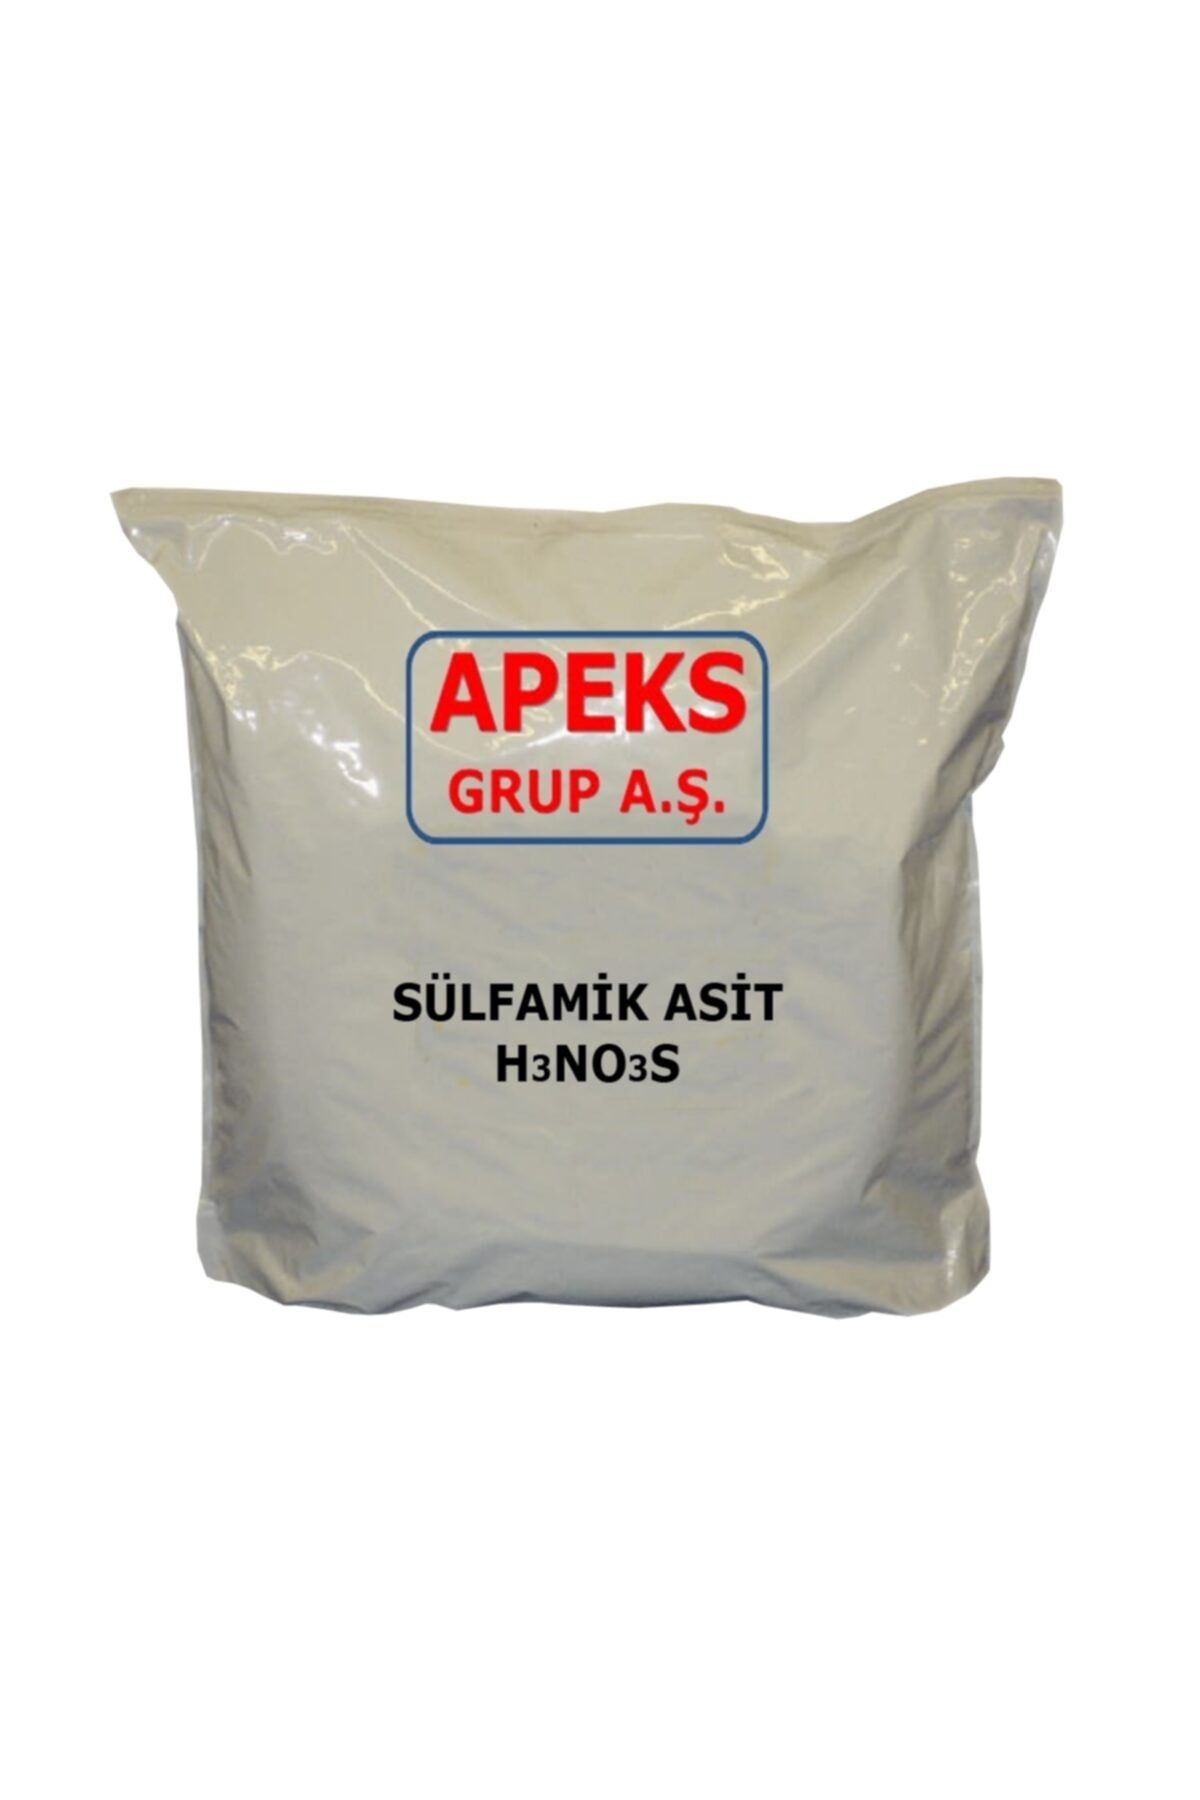 APEKS Sülfamik Asit - H3no3s - 1 kg